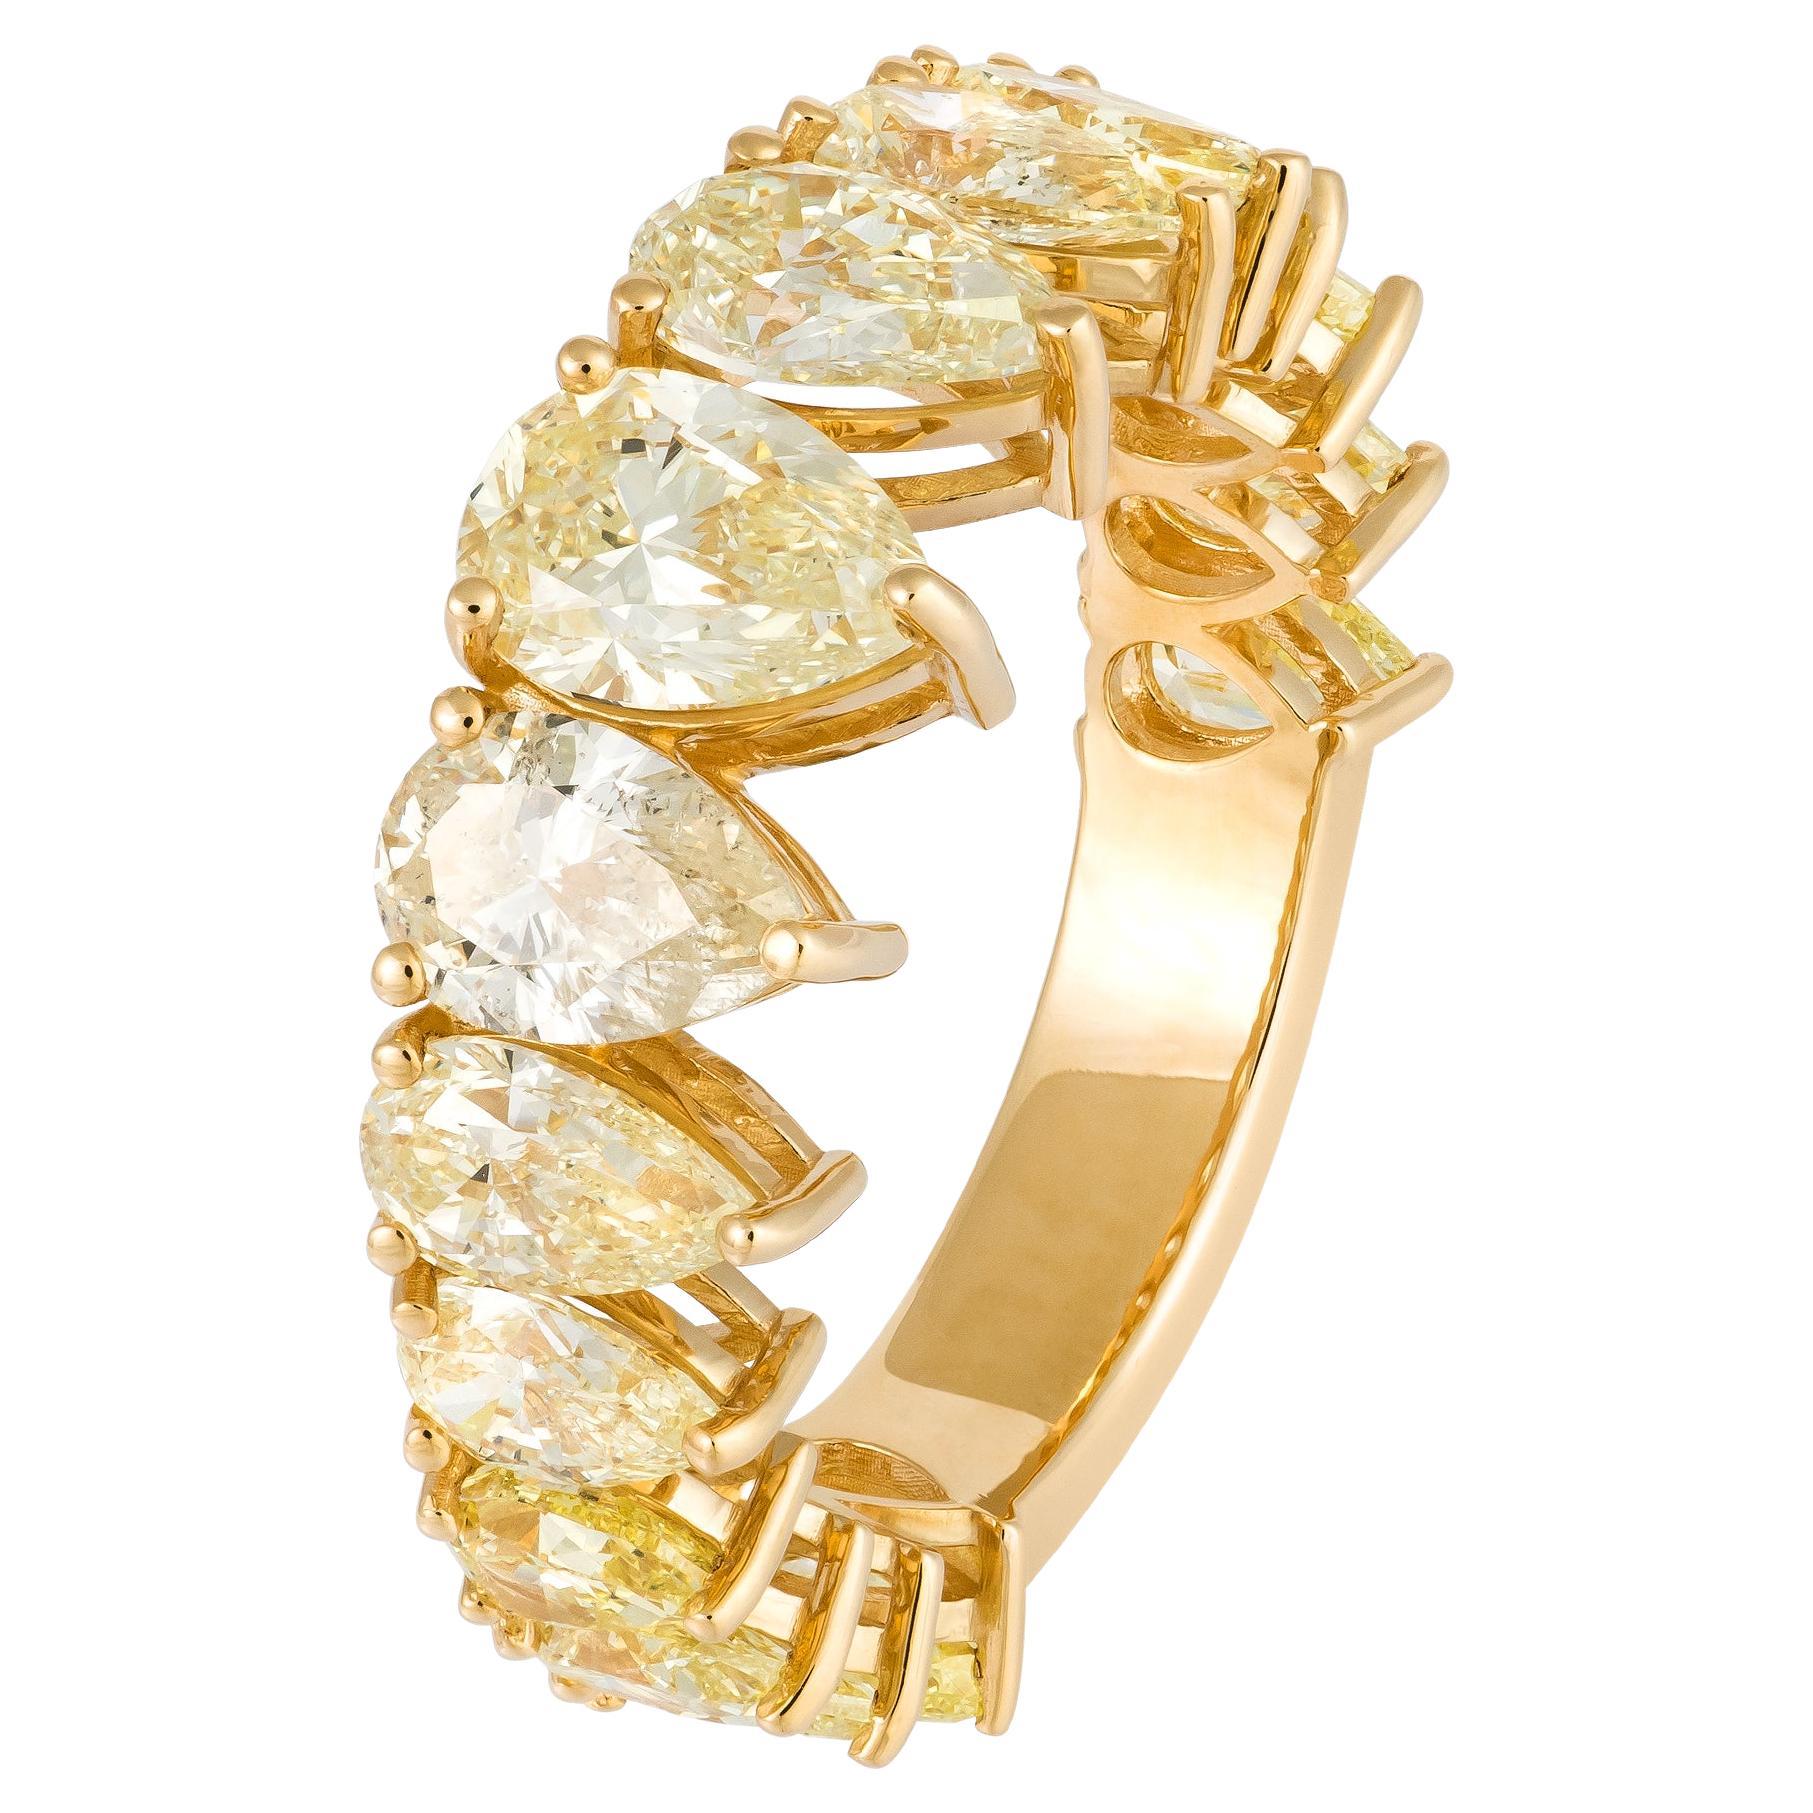 Stunning Yellow 18K Gold Yellow Diamond Ring for Her